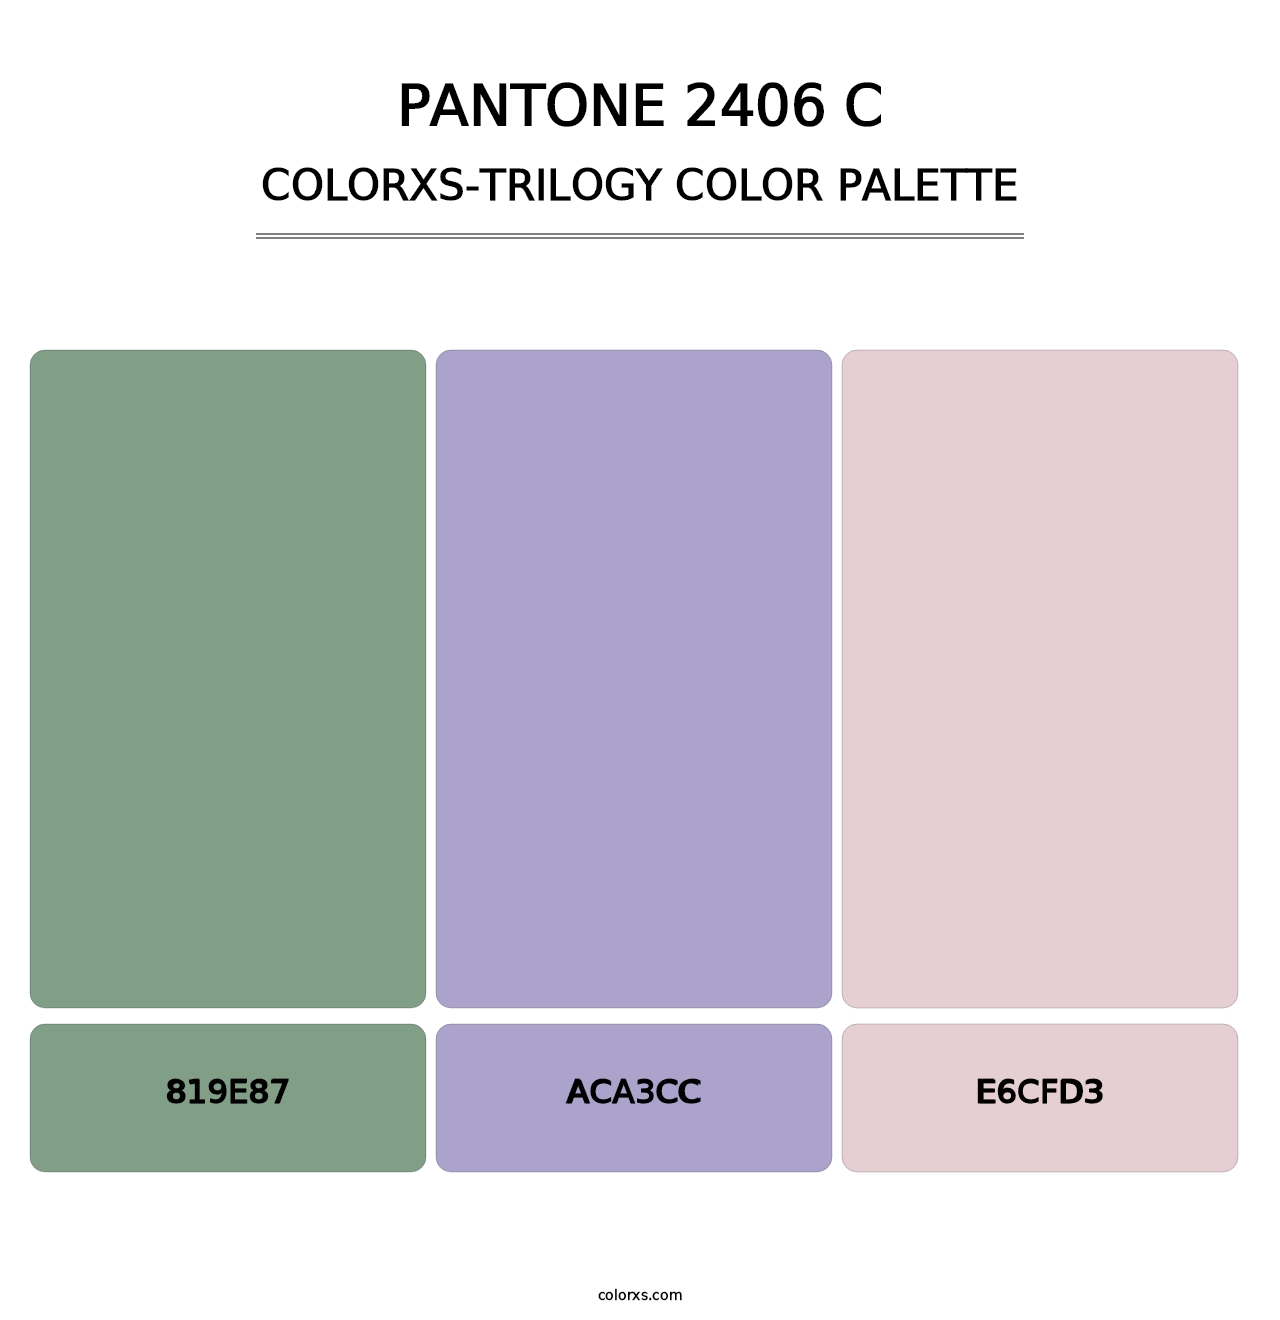 PANTONE 2406 C - Colorxs Trilogy Palette